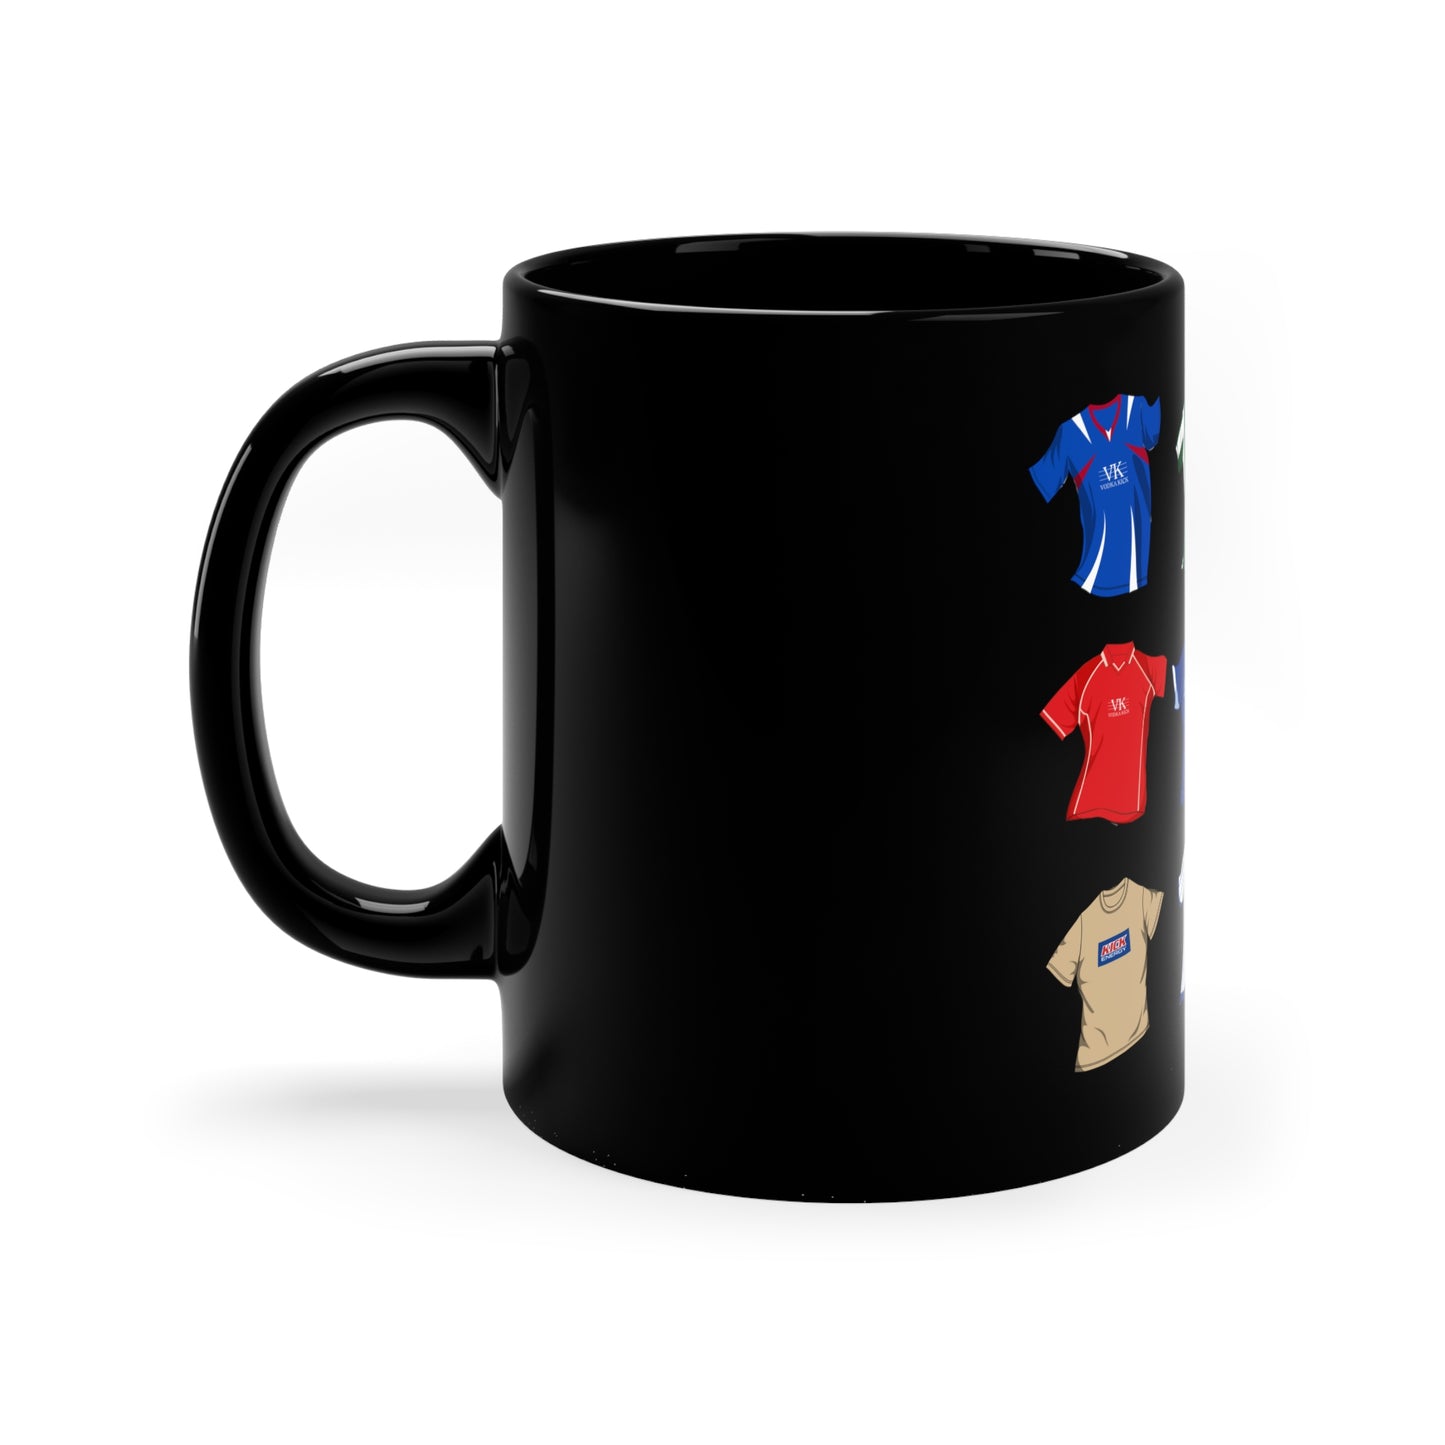 Chesterfield FC iconic kits mug 11oz Black Mug